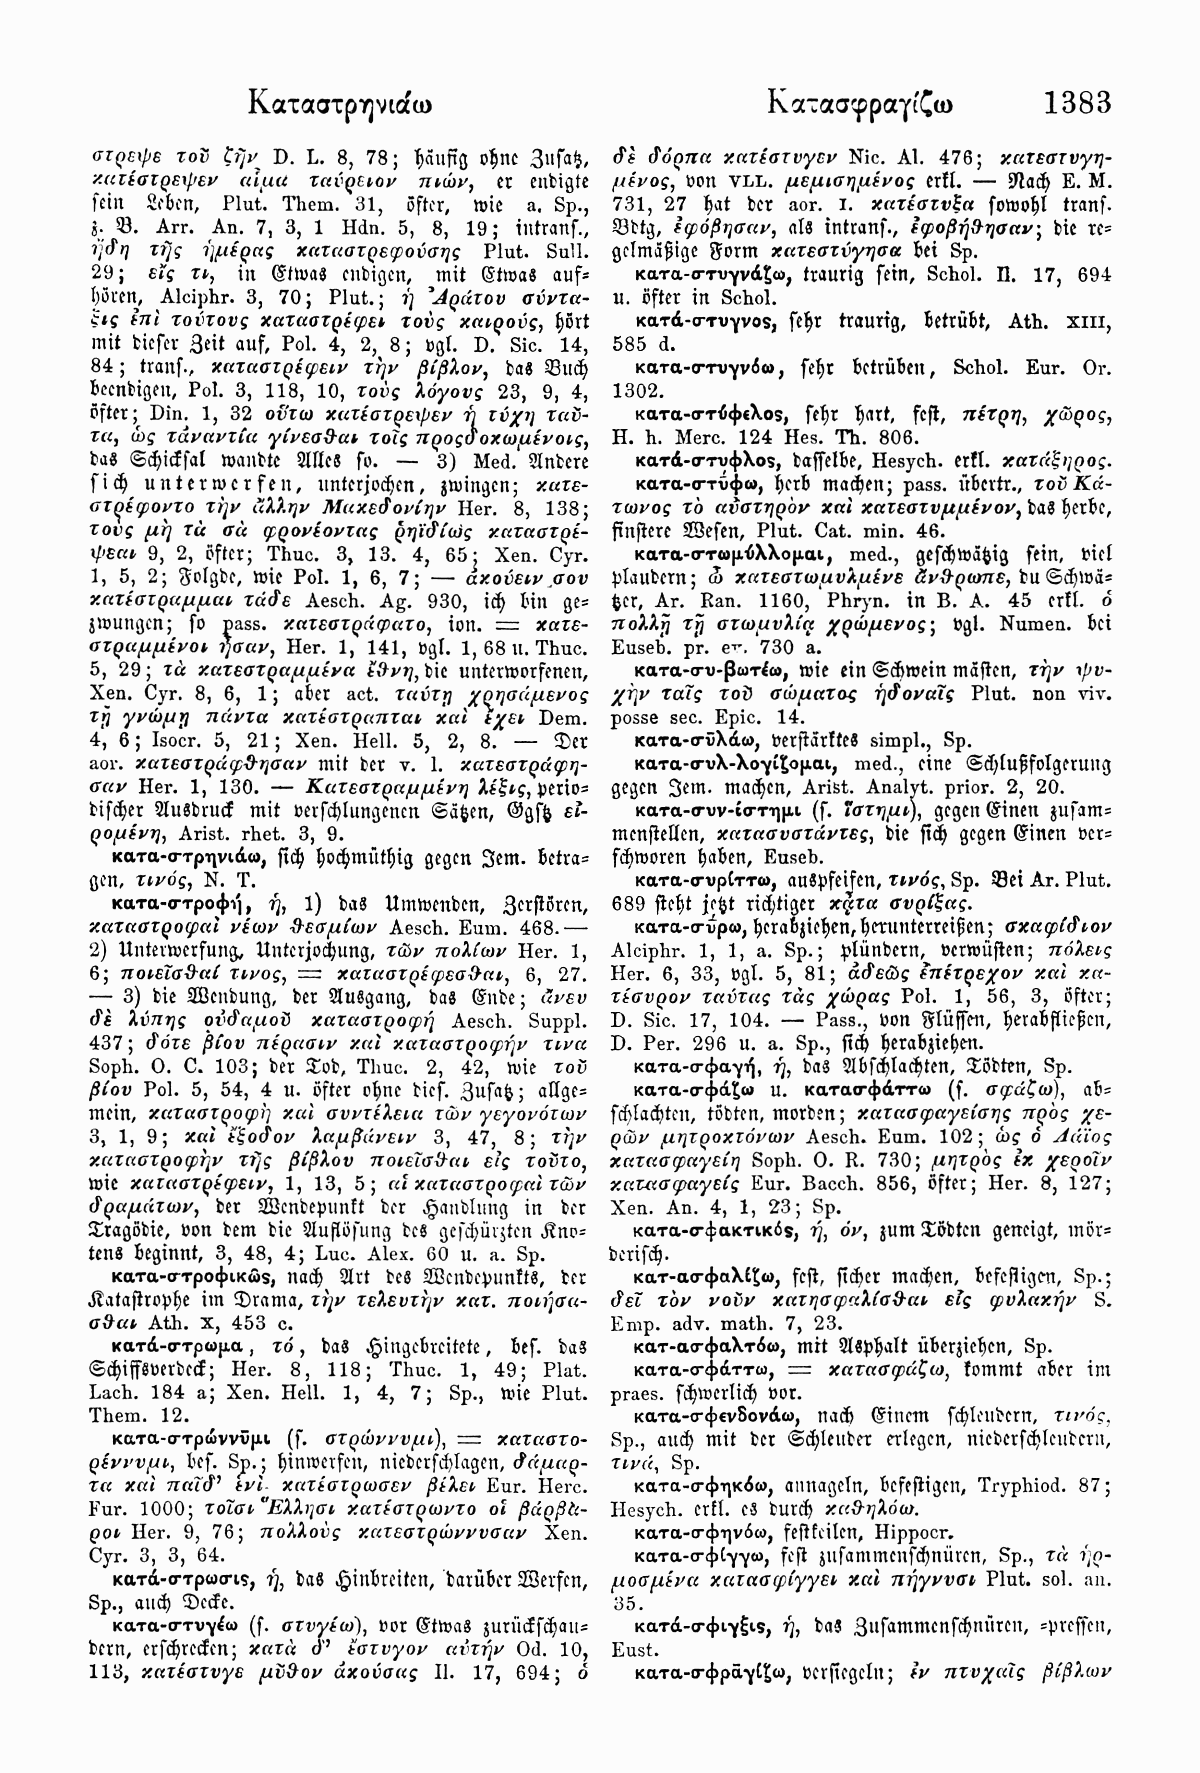 Wilhelm Pape: Handwörterbuch der griechischen Sprache. Braunschweig <sup>3</sup>1914, Band 1 S. 1383